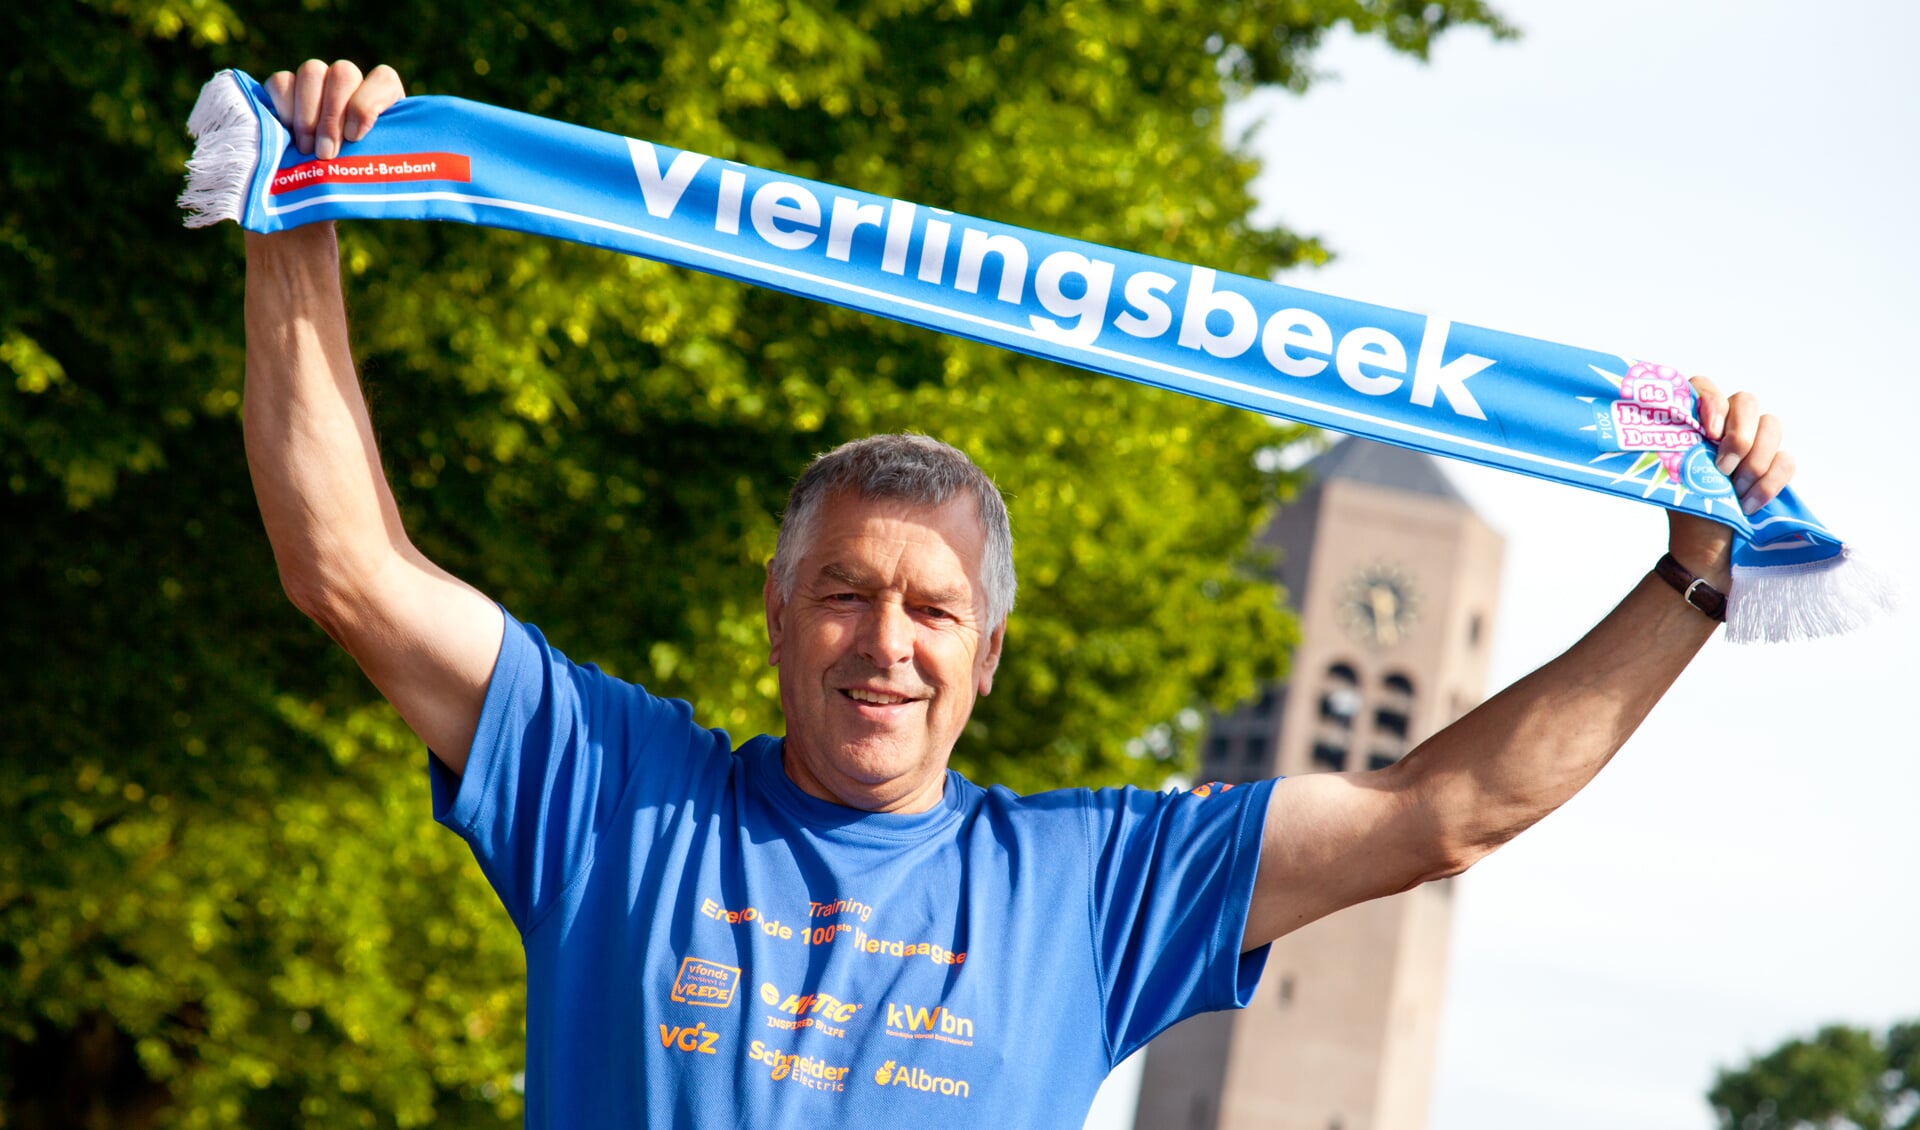 Jos van Boekel uit Vierlingsbeek loopt 'Ereronde' tijdens Vierdaagse. (foto: Diana Derks)